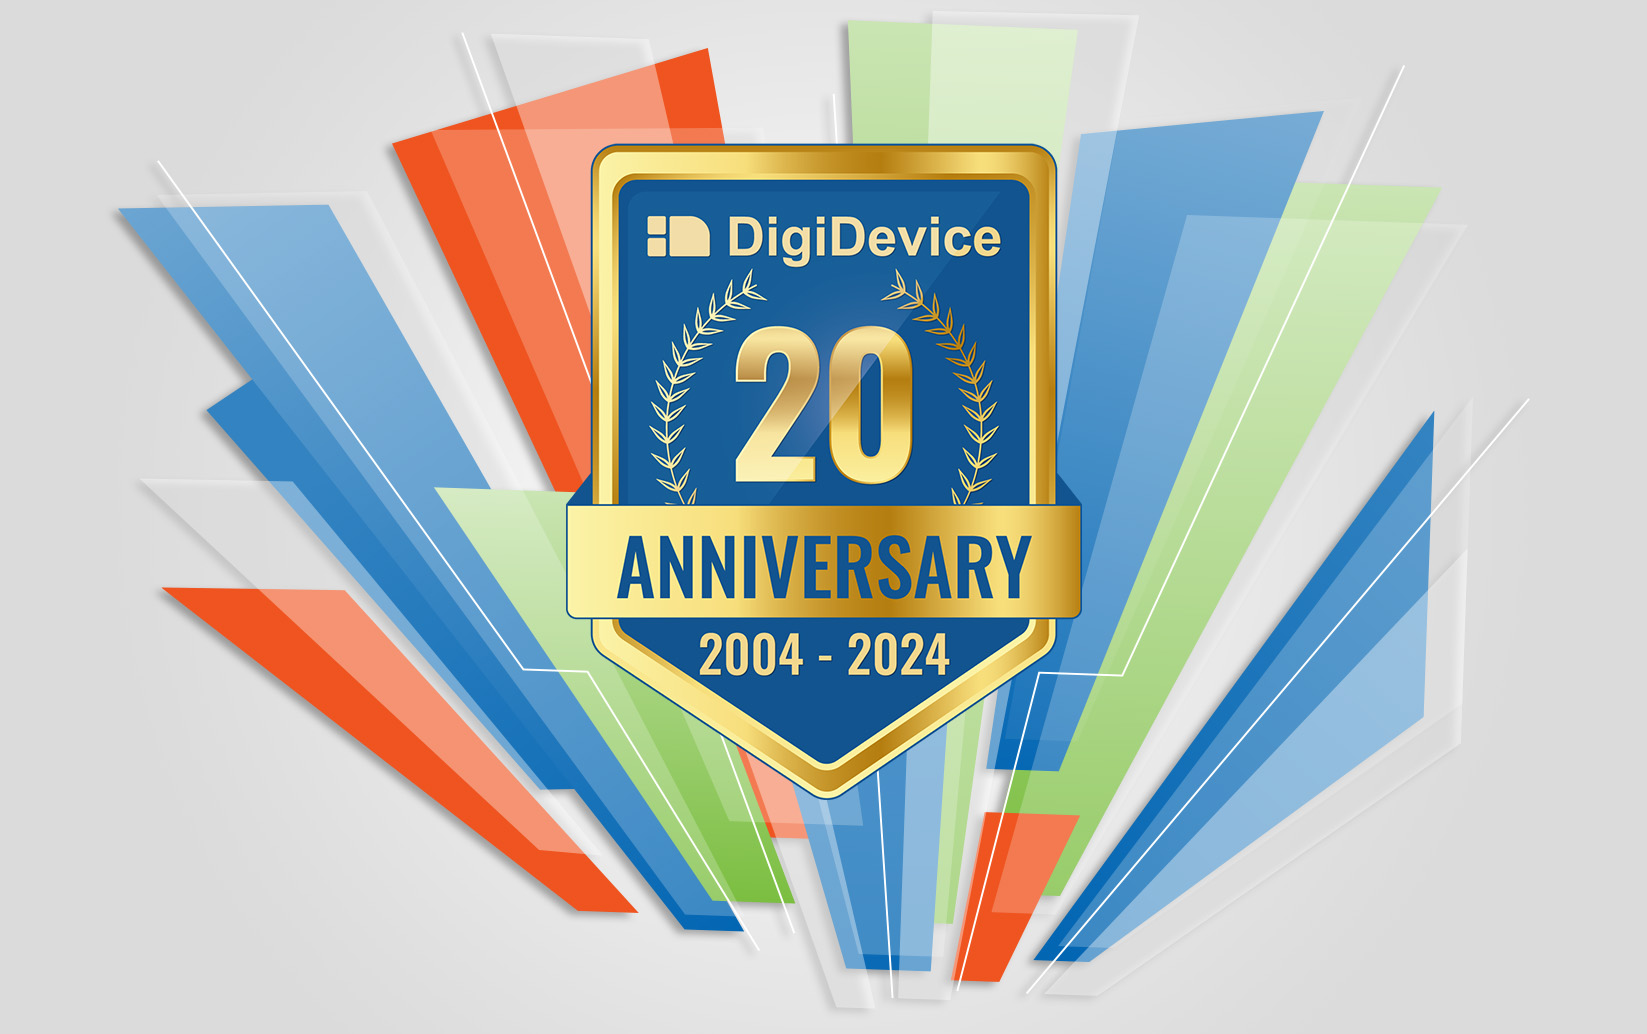 DigiDevice anniversary - 20 years